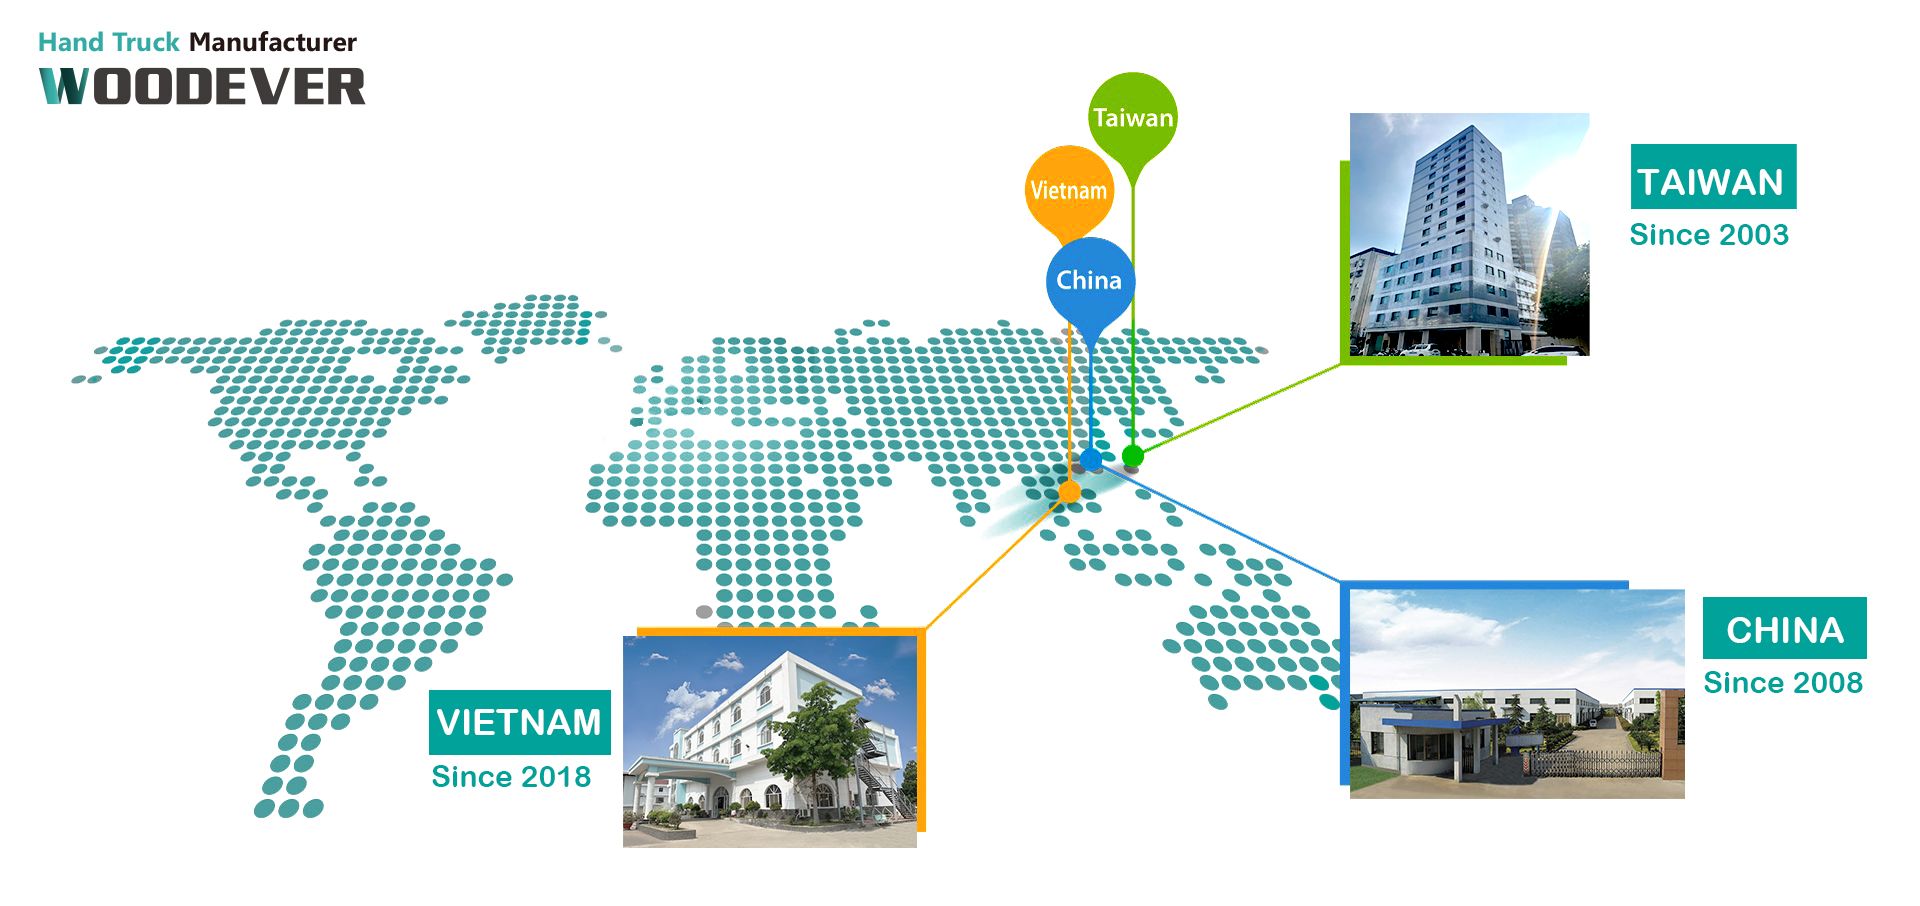 WOODEVER heeft het hoofdkantoor in Taichung, Taiwan en 2 productiefabrieken in China en Vietnam